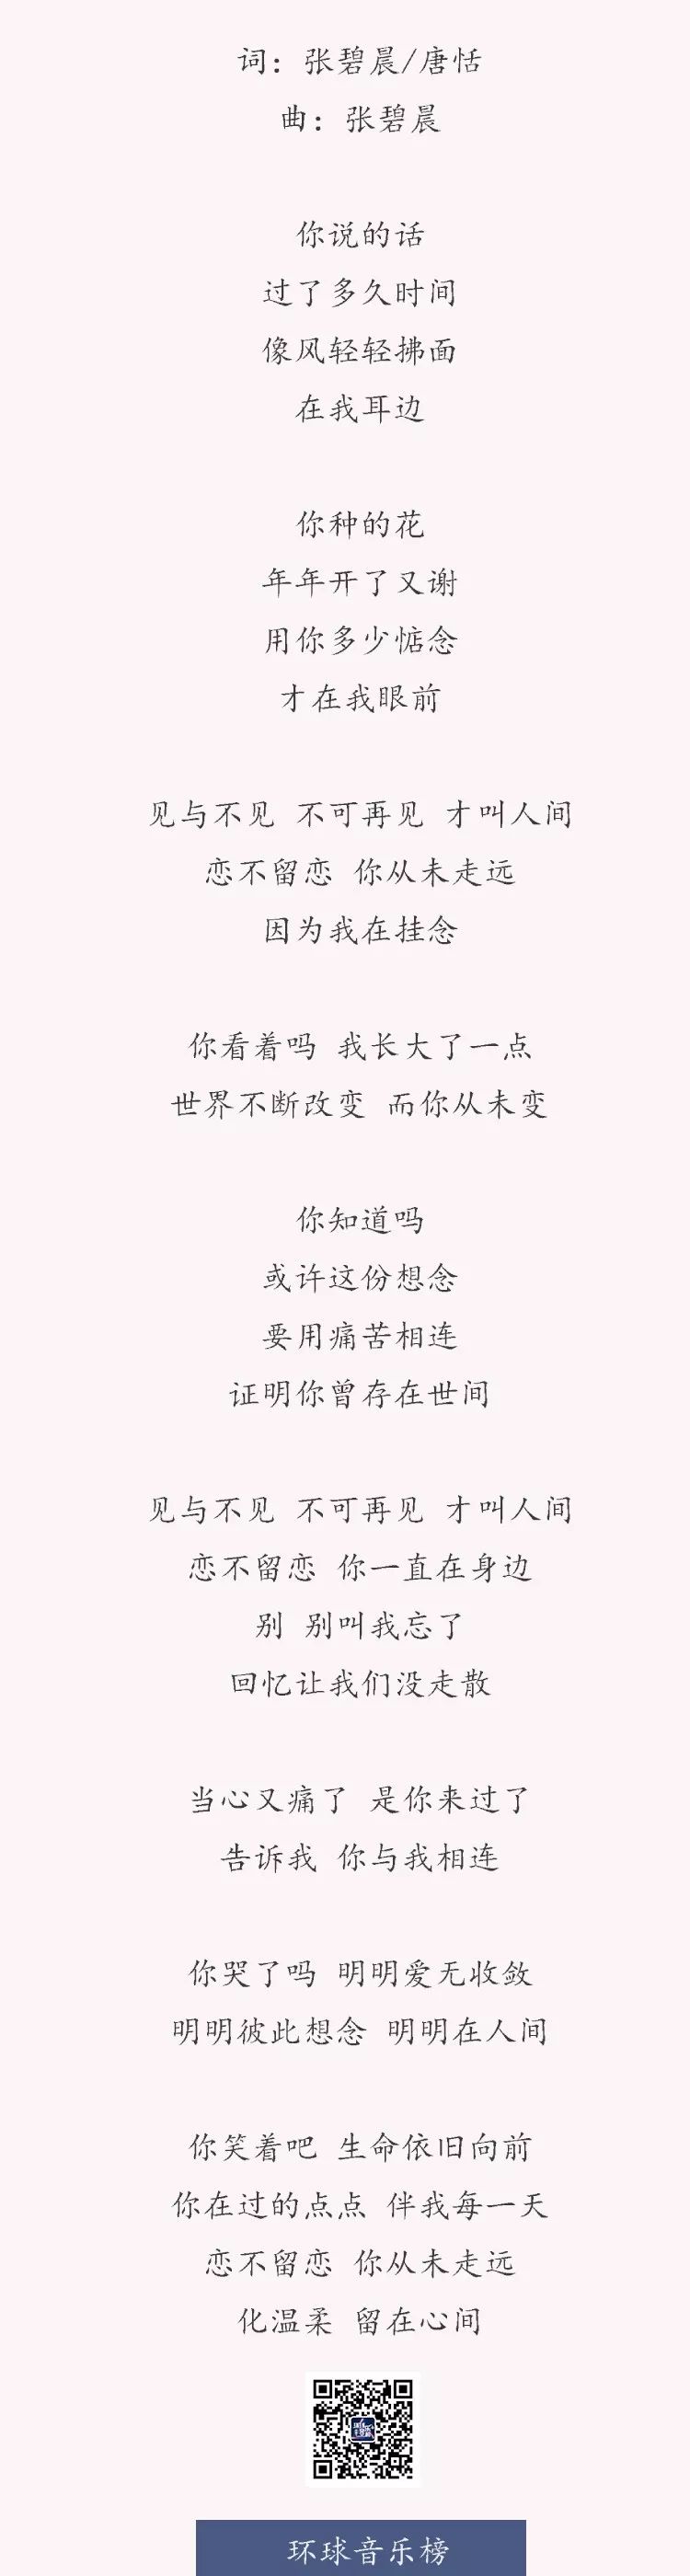 张碧晨新歌《见与不见》,送给途经生命的温柔